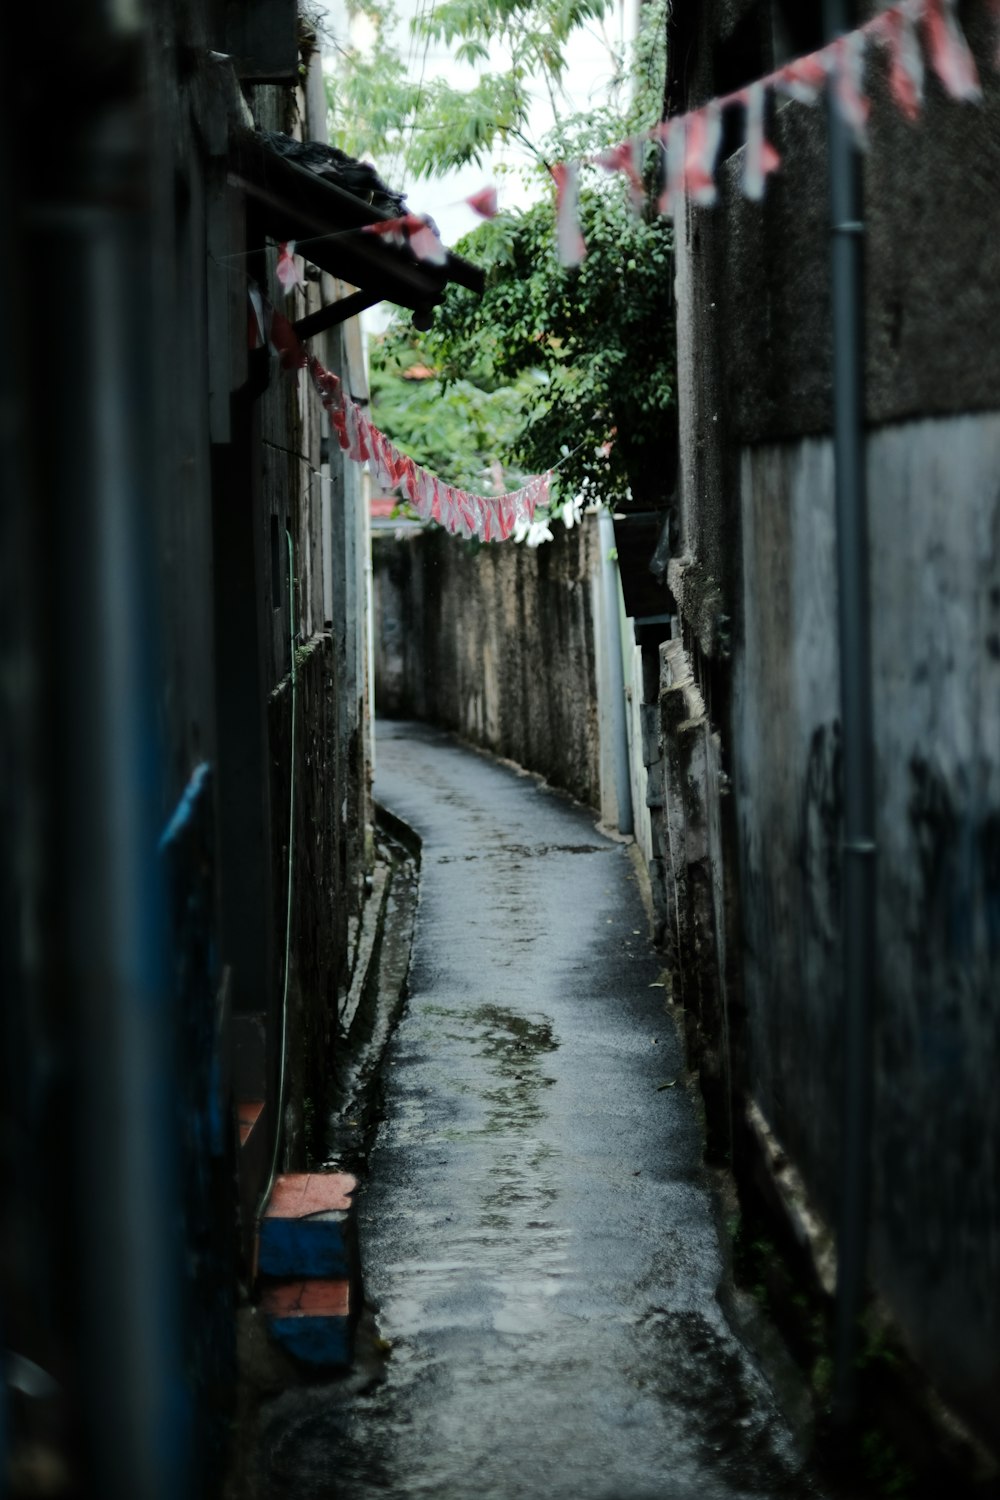 a narrow alley between buildings